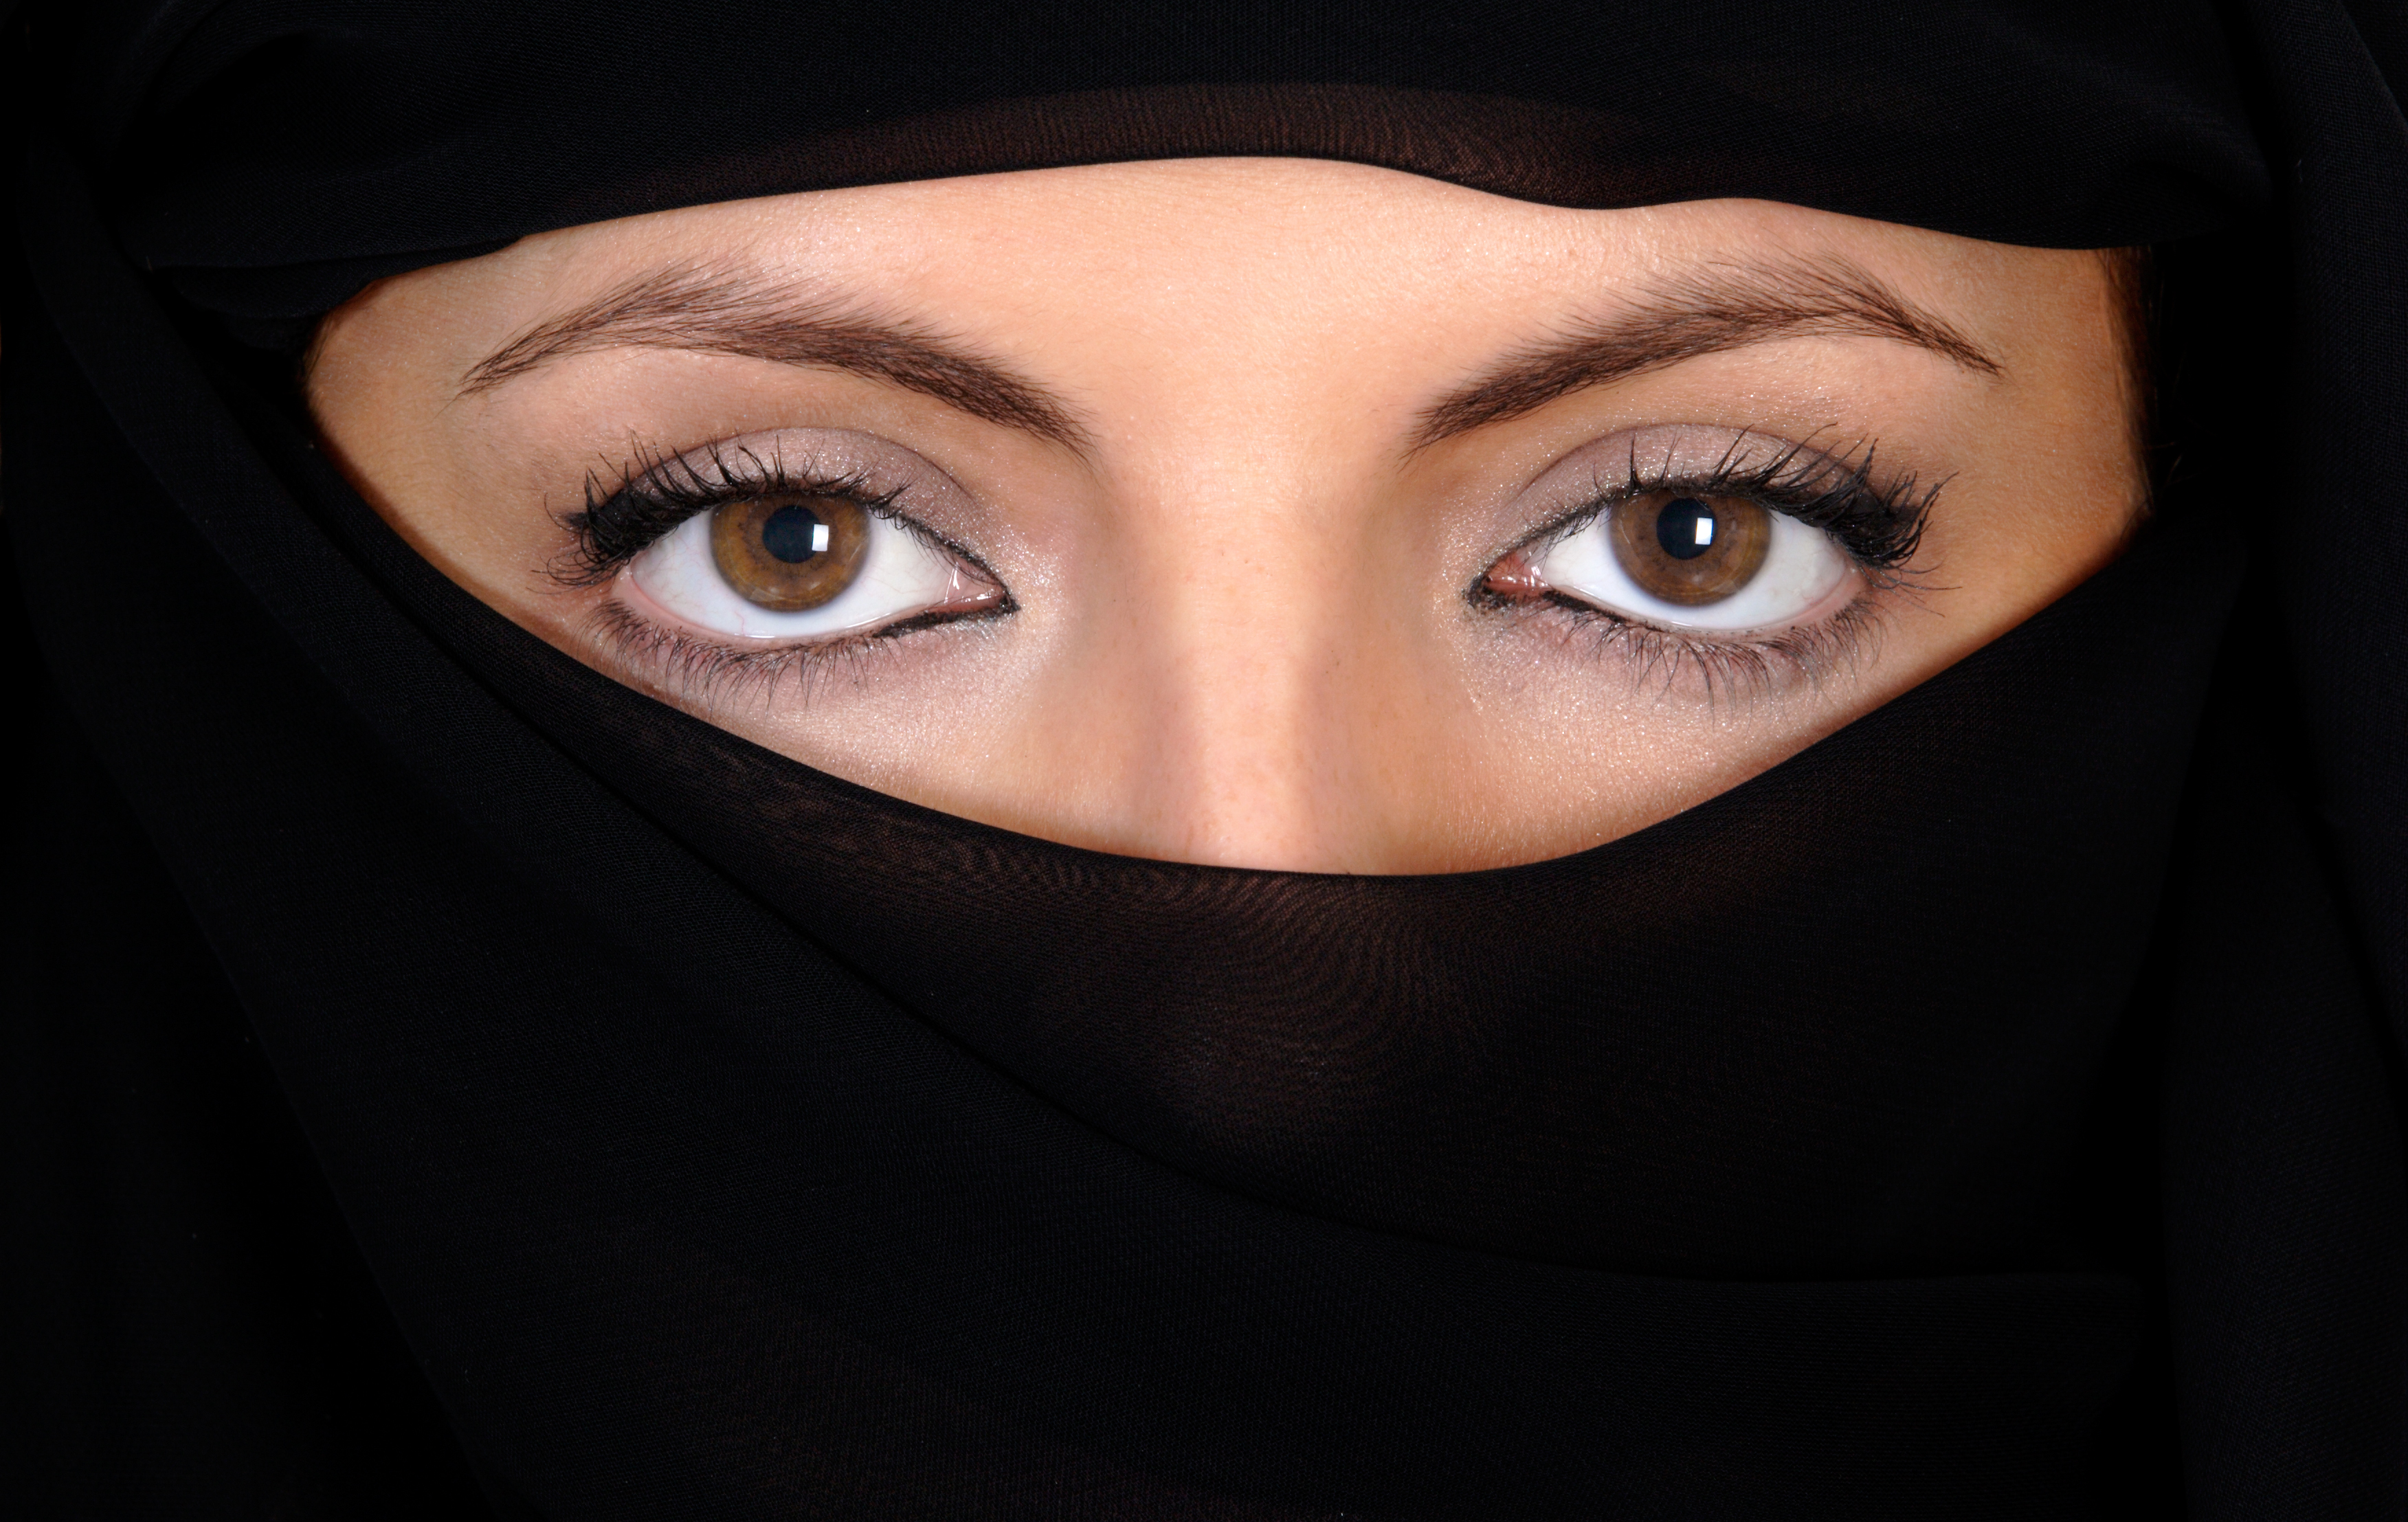 Afghan woman wearing a niqab